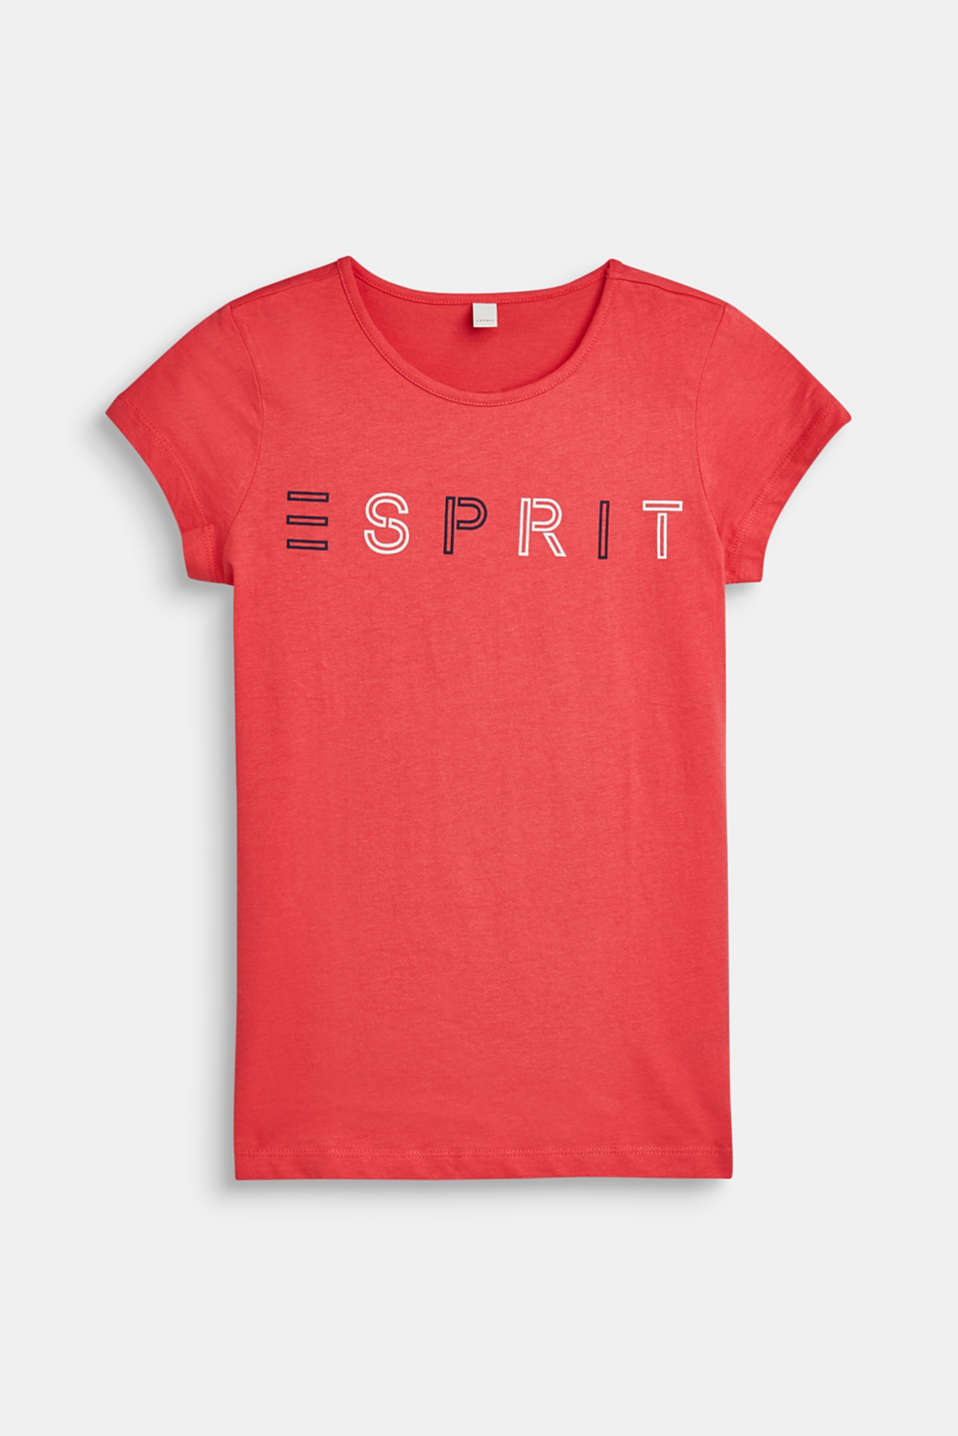 Esprit - Logo print T-shirt at our Online Shop